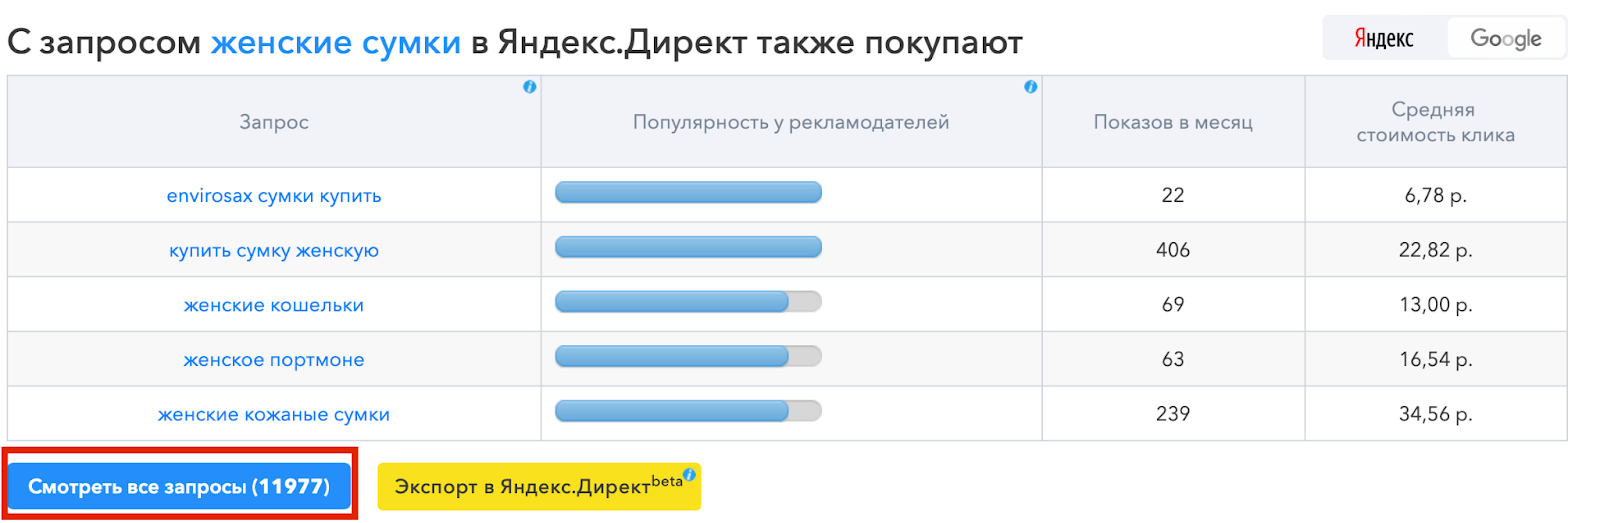 «С запросом… в Яндекс.Директ также покупают»